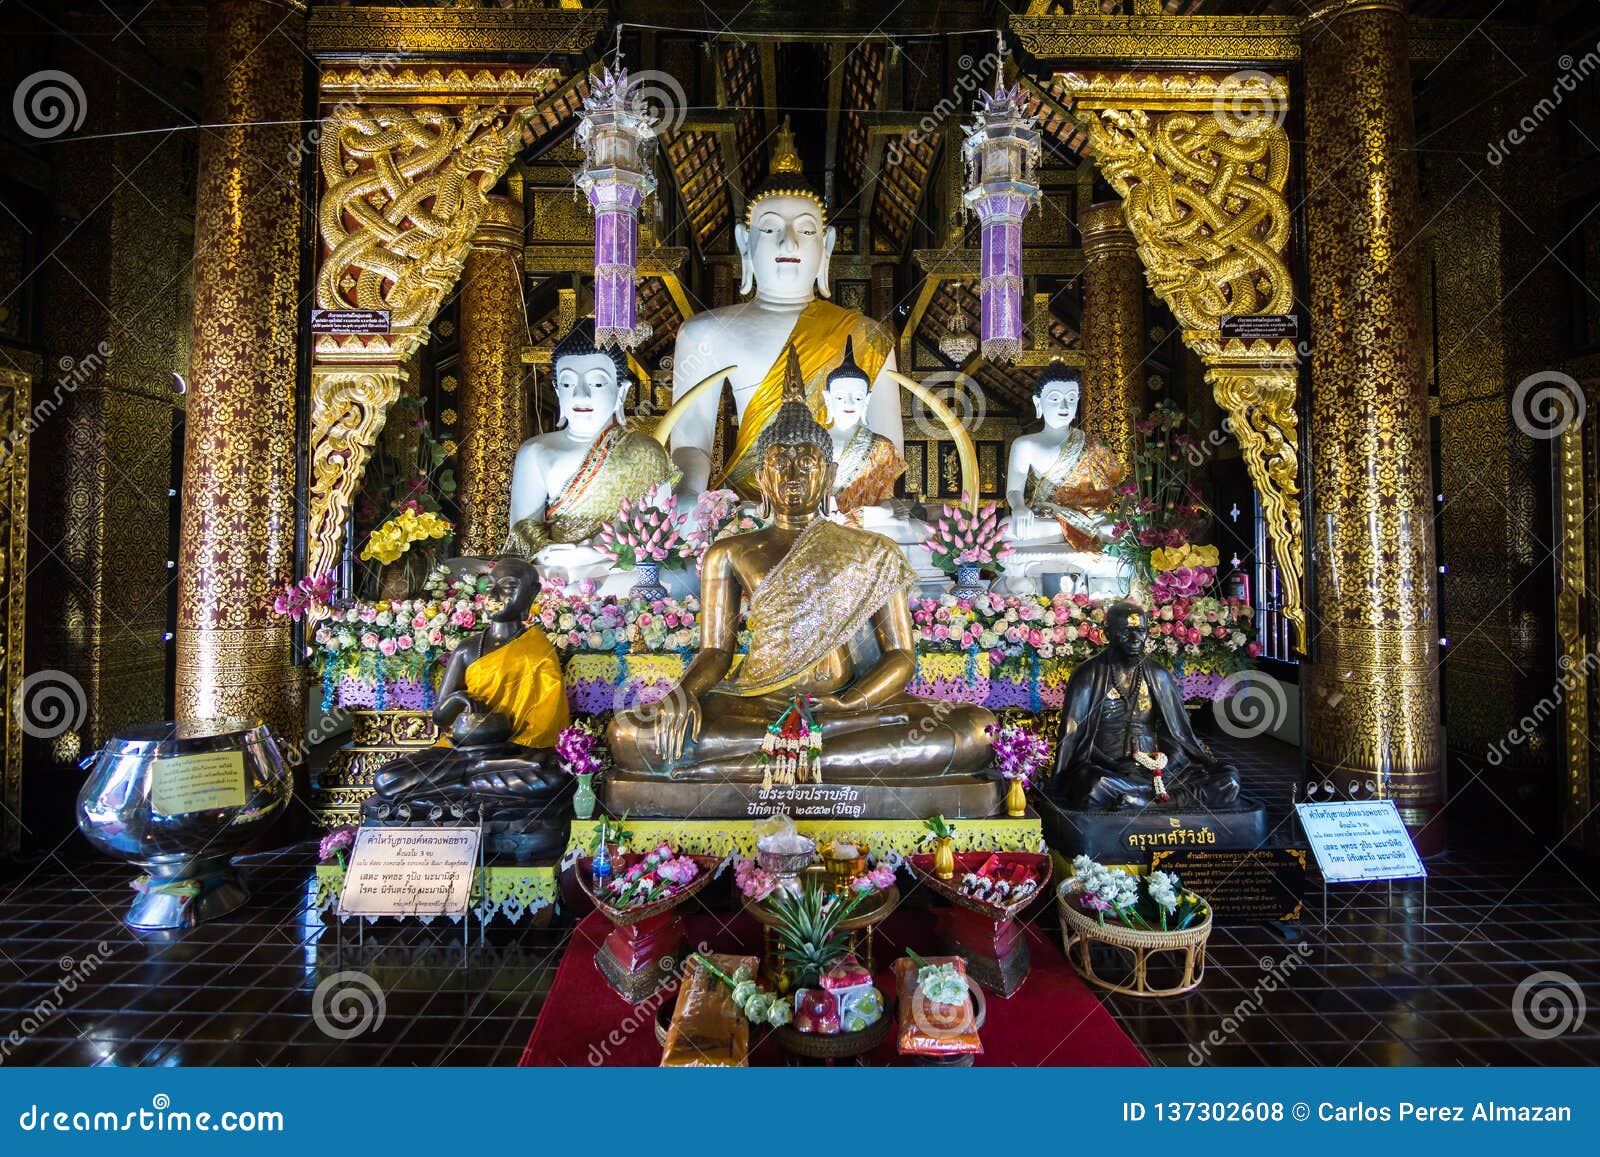 pequeÃÂ±o altar budista en la ciudad de chiang mai. small buddhist altar in the city of chiang mai.